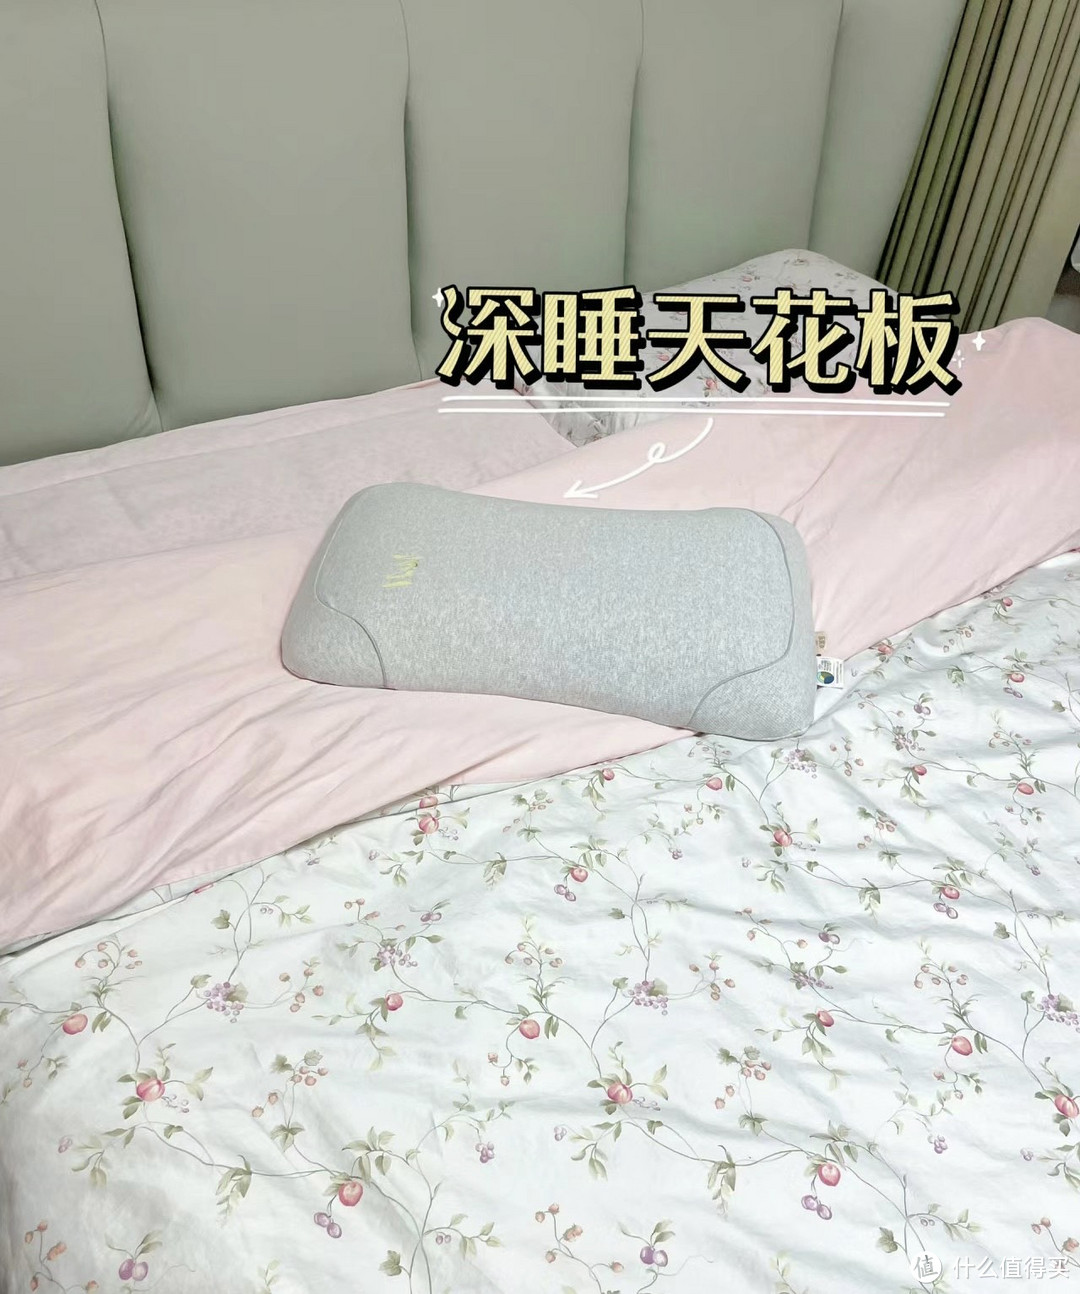 谁懂，入睡困难症终于找到了贼拉舒服的枕头